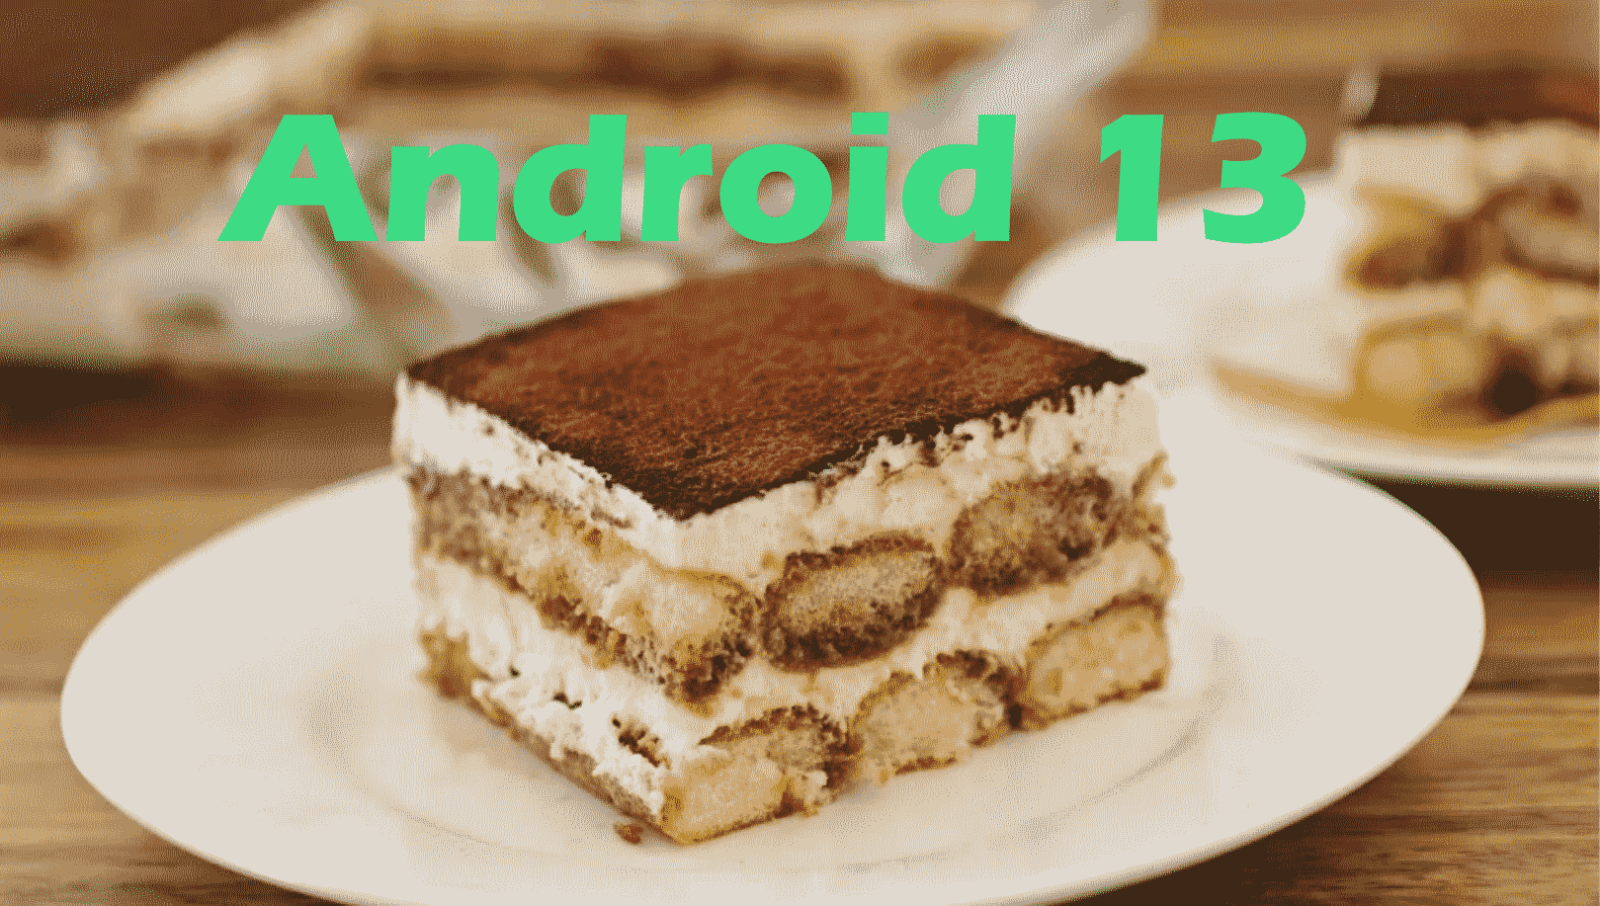 Características de Android 13